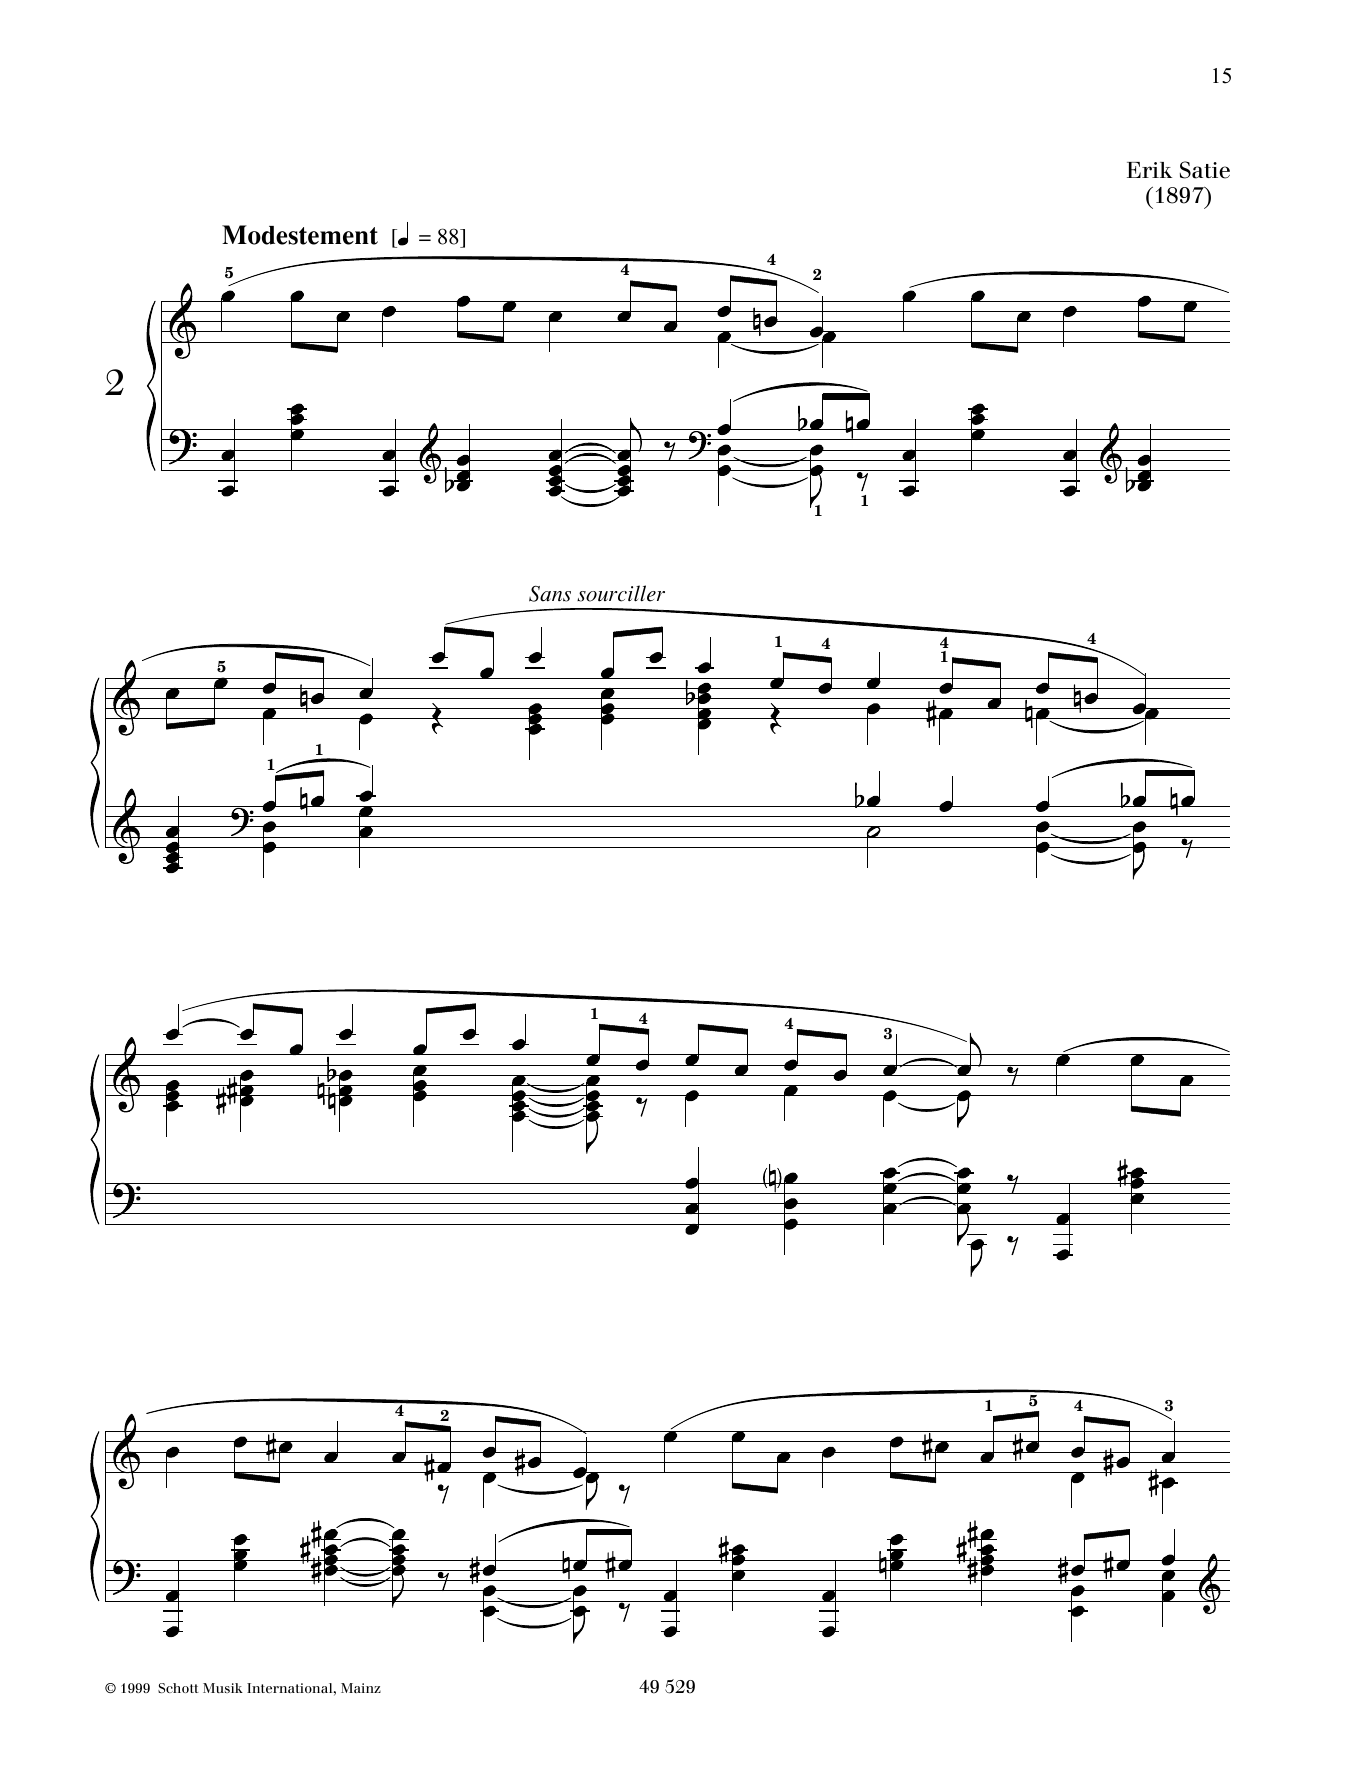 Air à faire fuir No. 2 sheet music